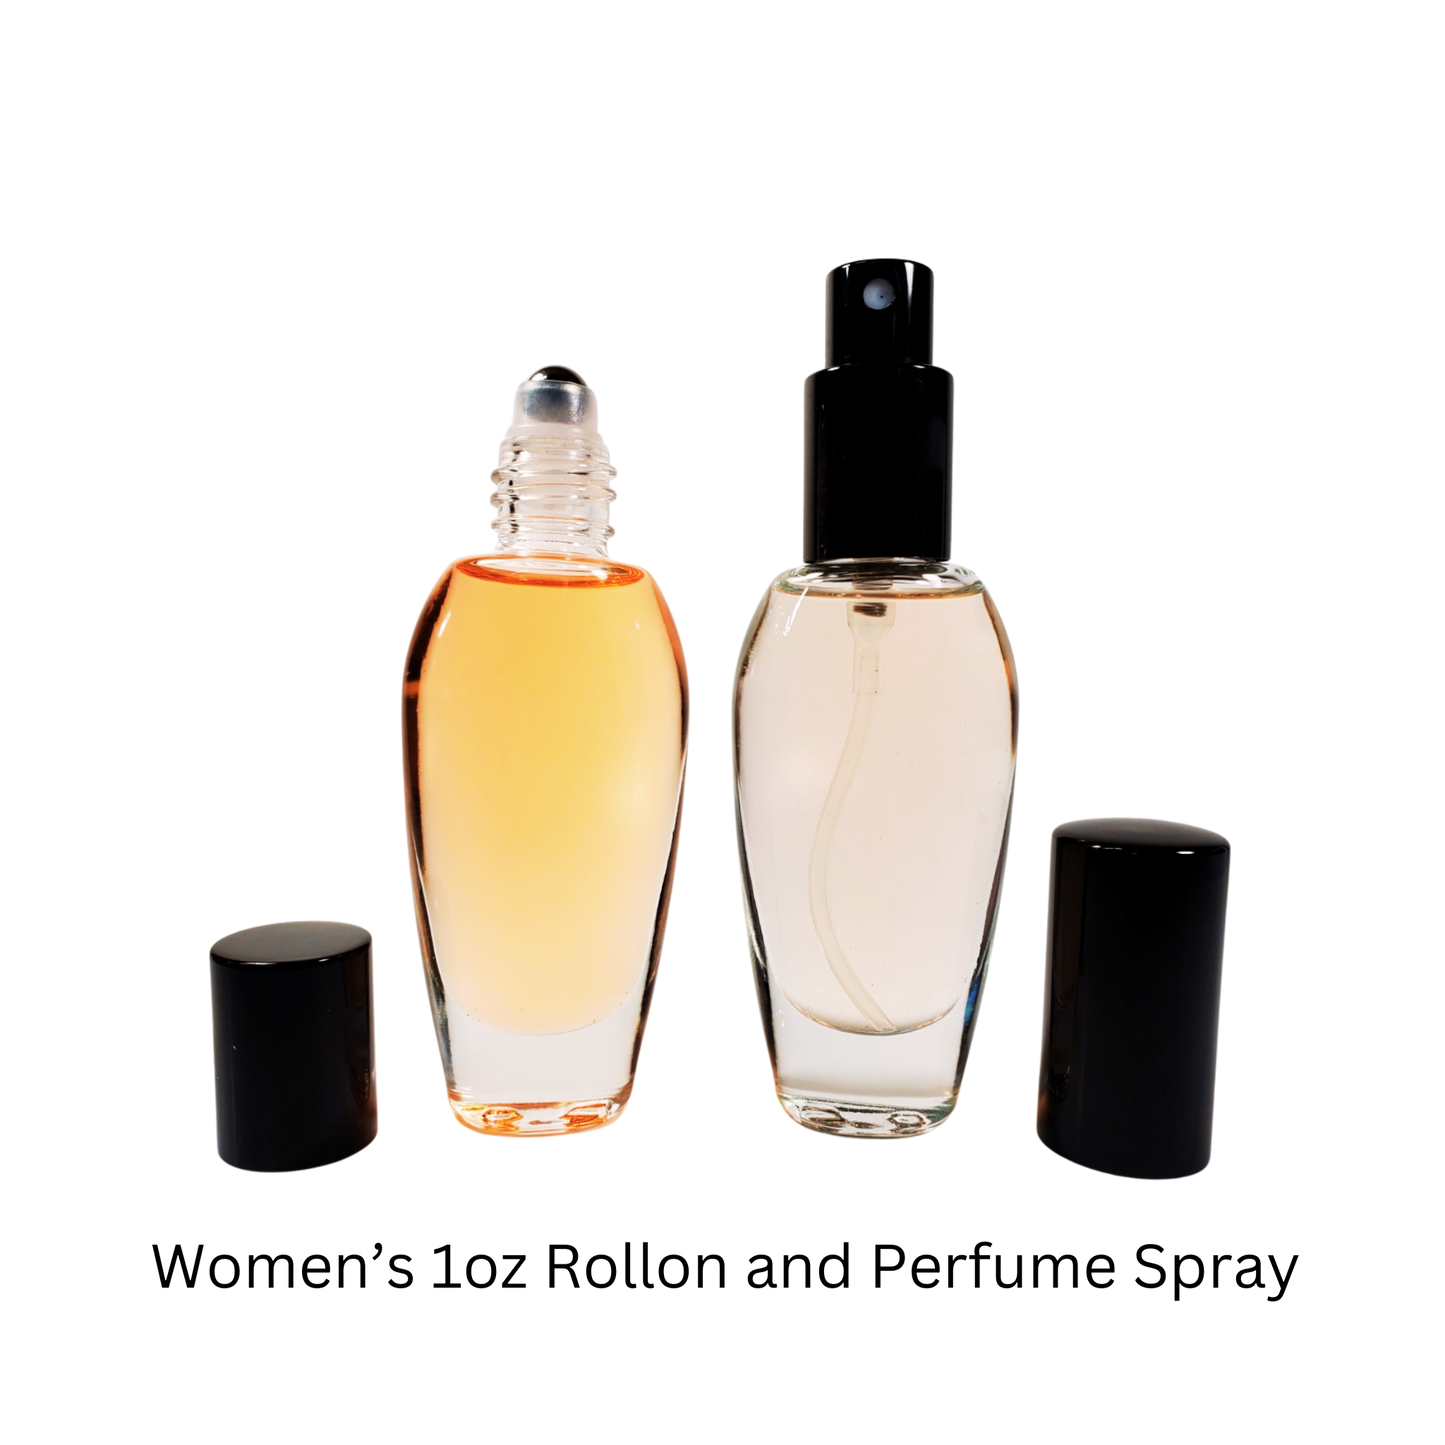 Soleil Blanc Type* / Perfume Body Oil / Eau de Parfum